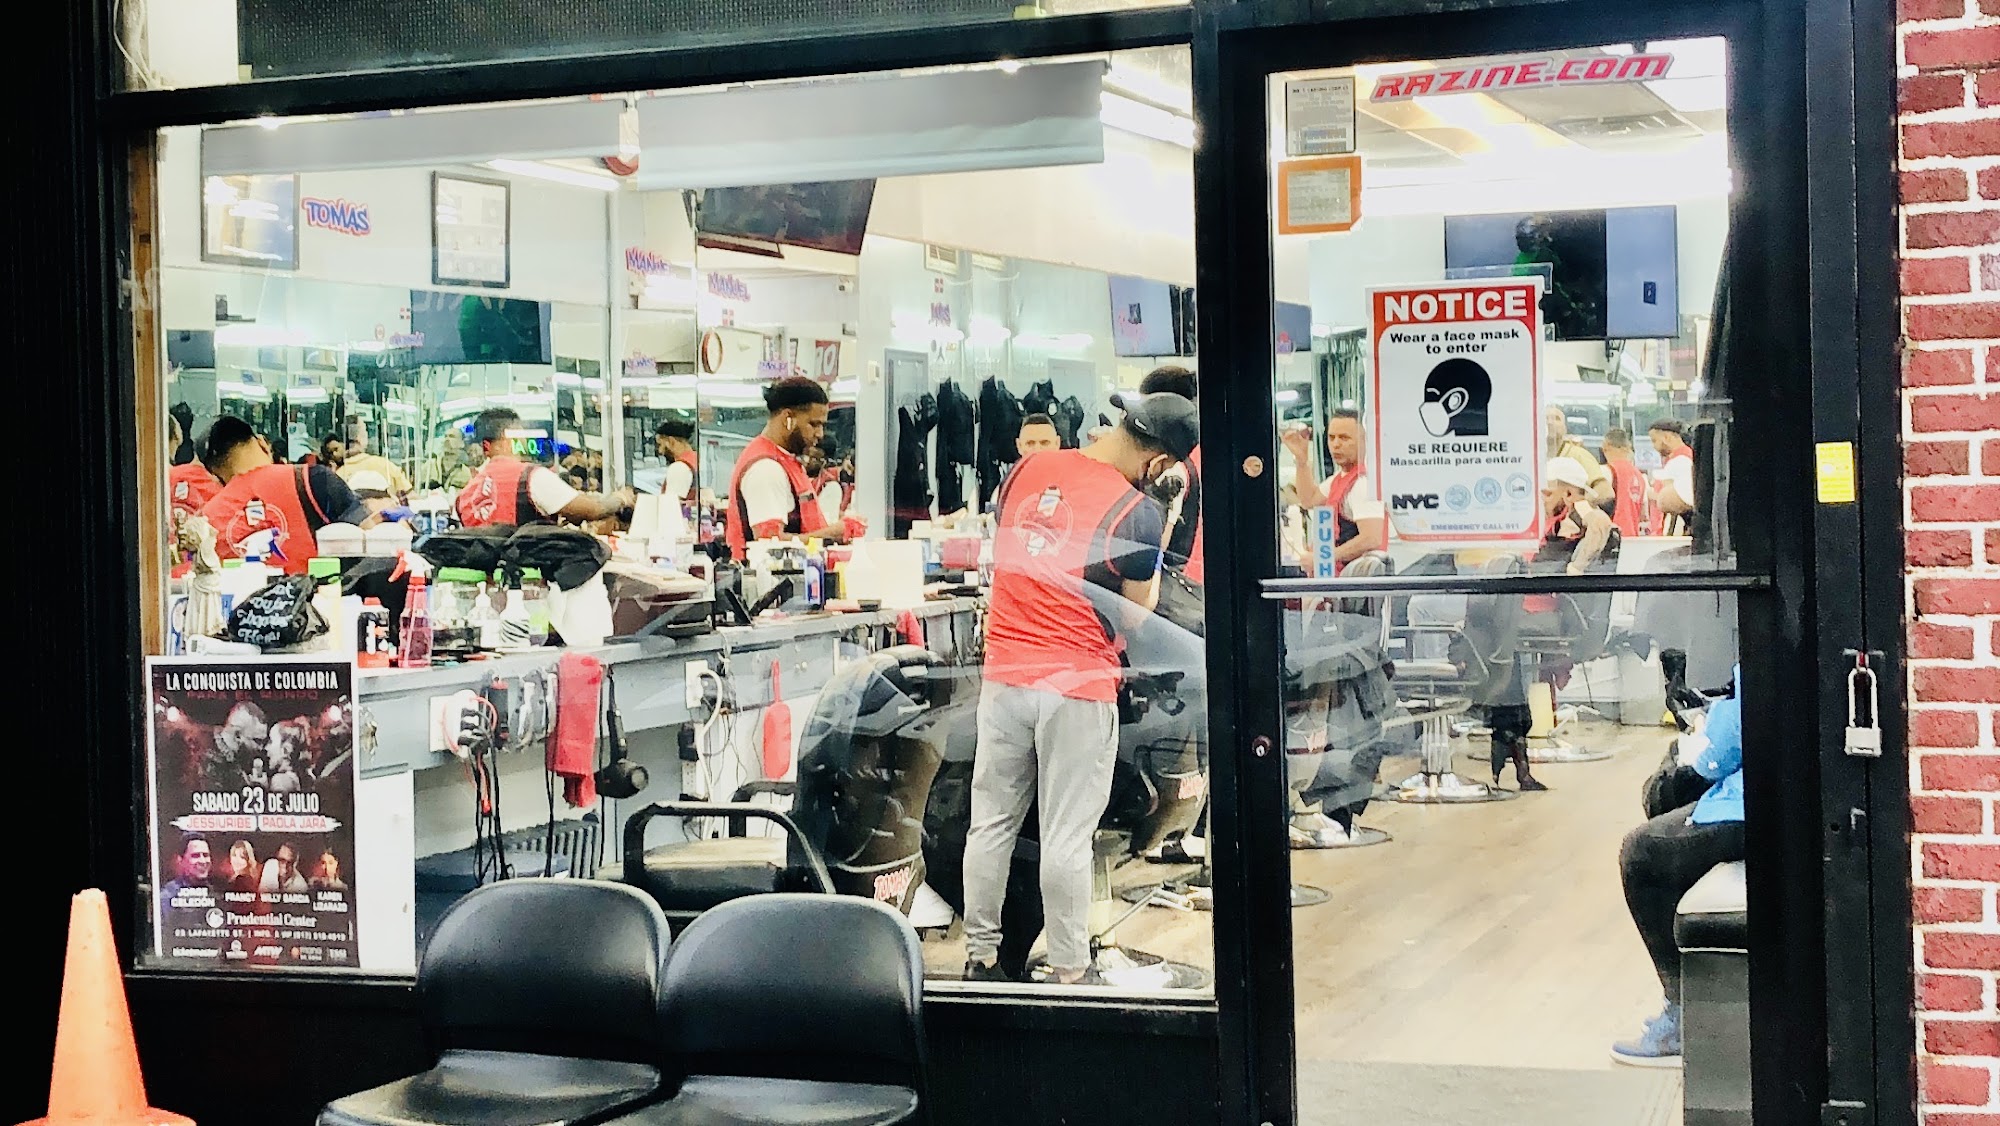 Exclusive Barber Shop